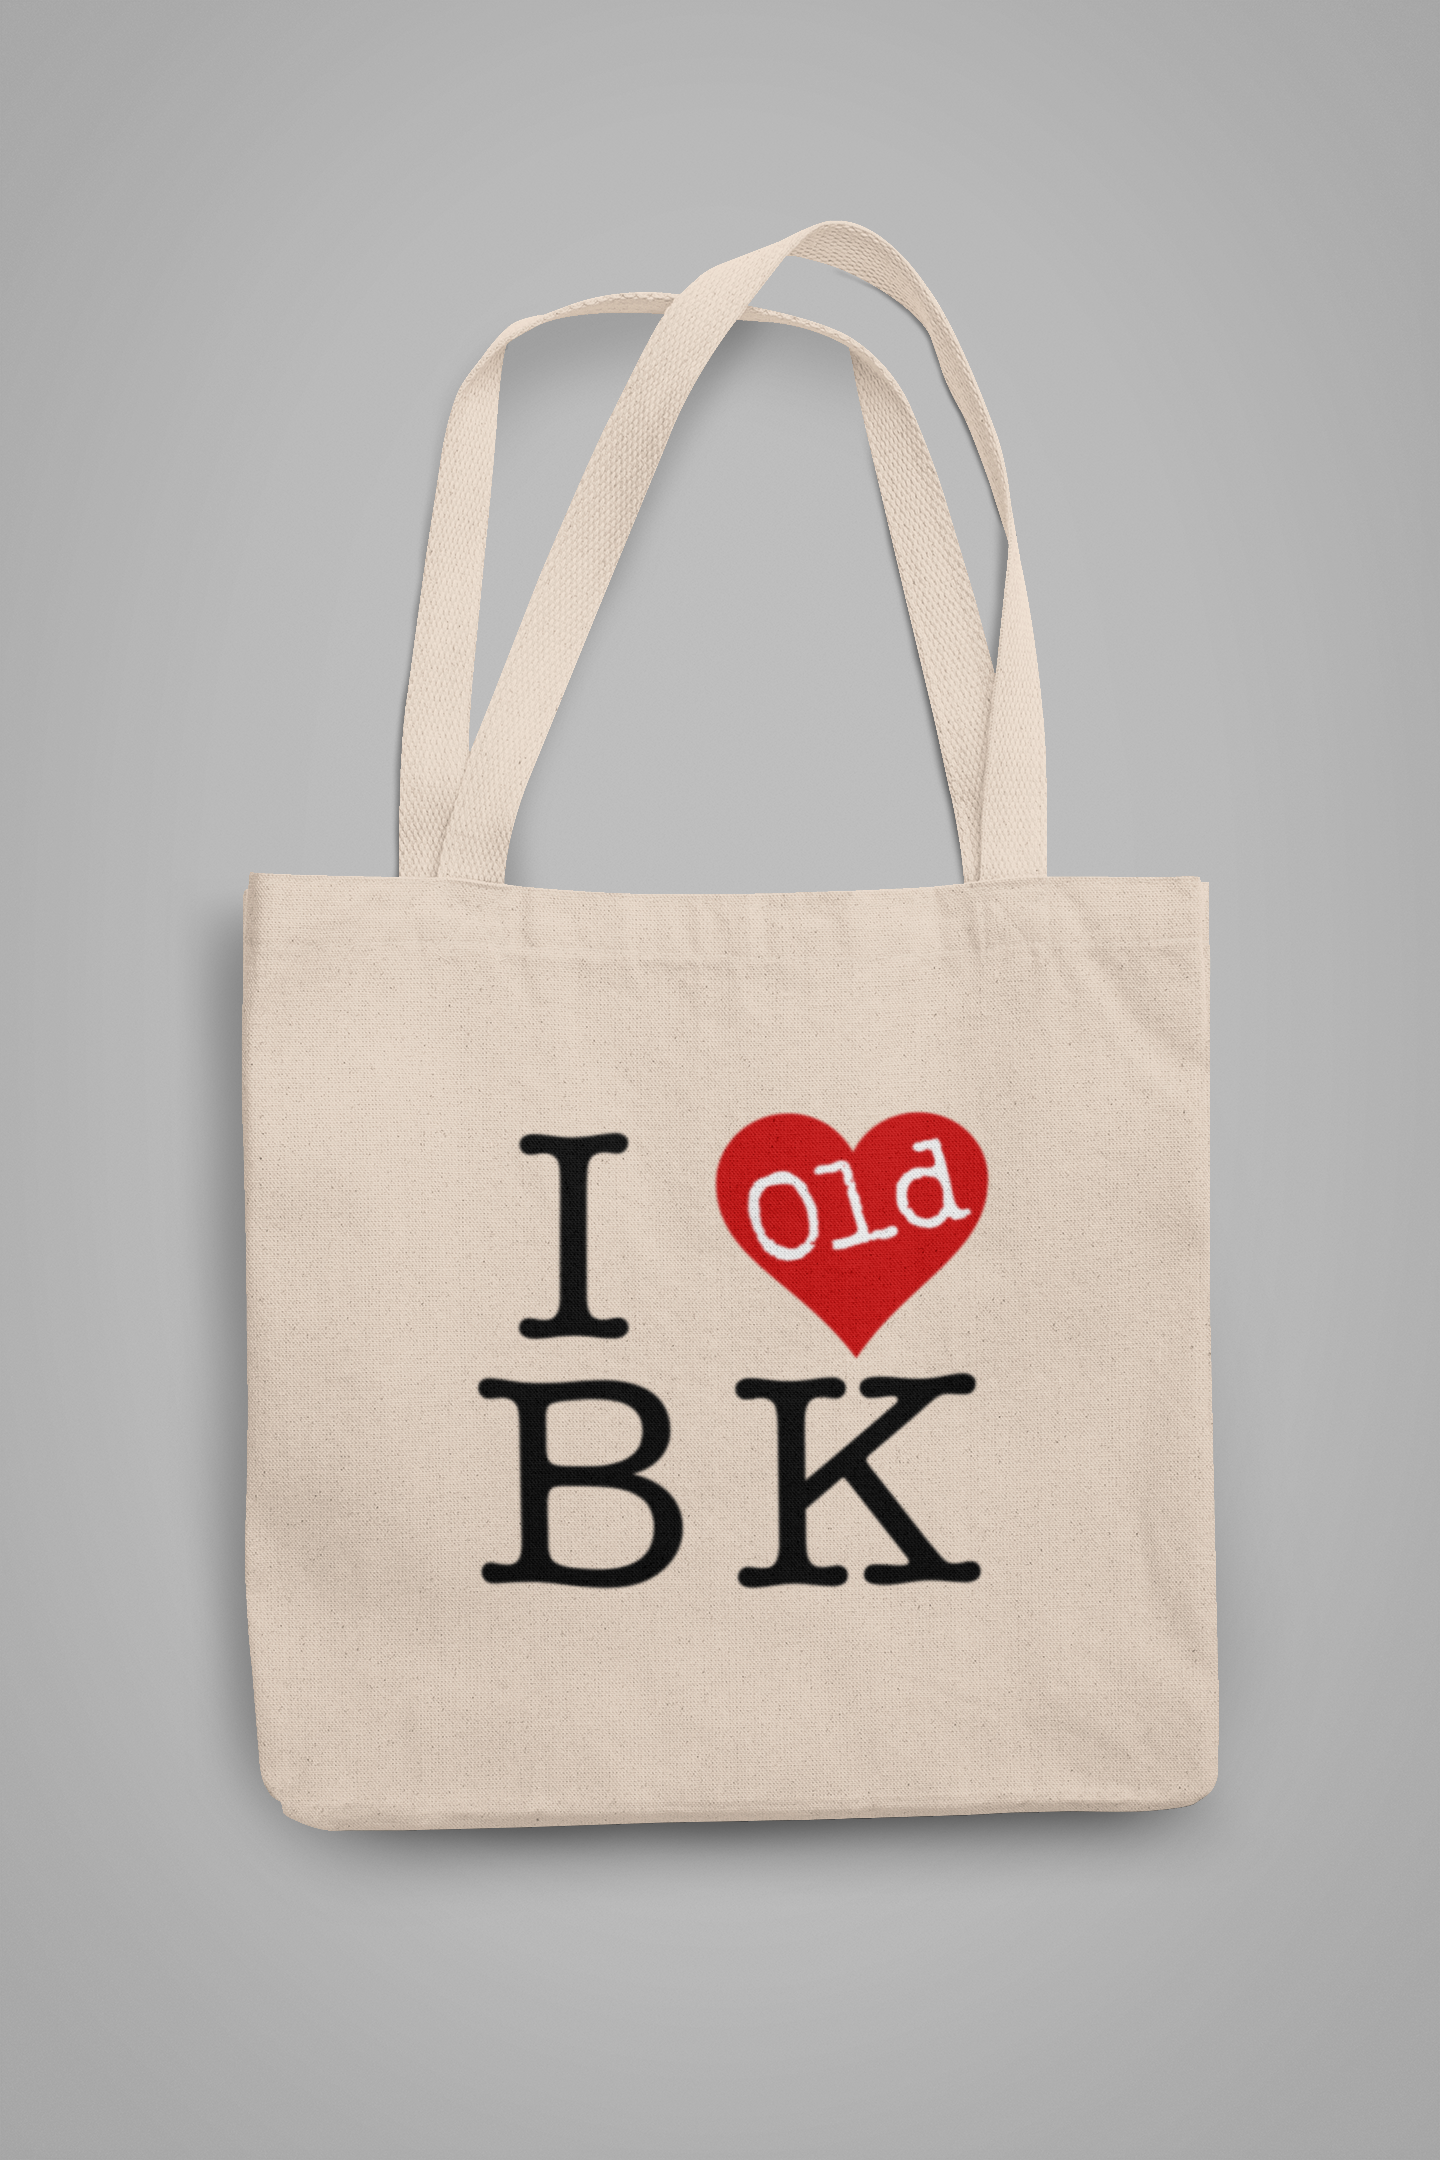 I Heart Old BROOKLYN Tote Bag